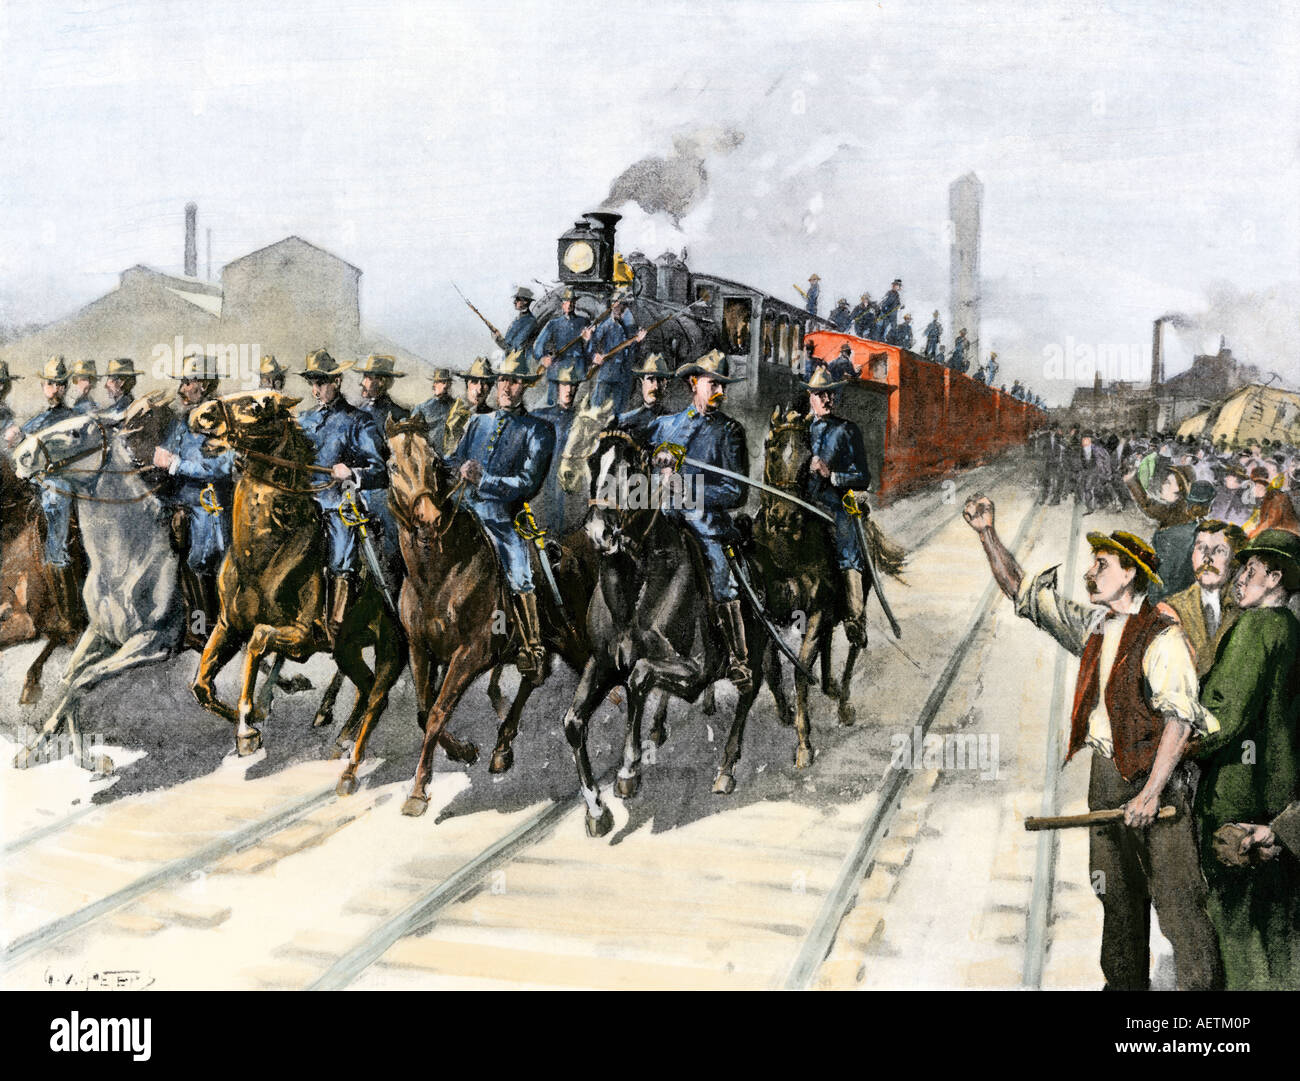 US Cavalry escortant un train de la viande au cours de la Chicago Stockyards grève Pullman 1894. La main, d'une illustration de demi-teinte Banque D'Images